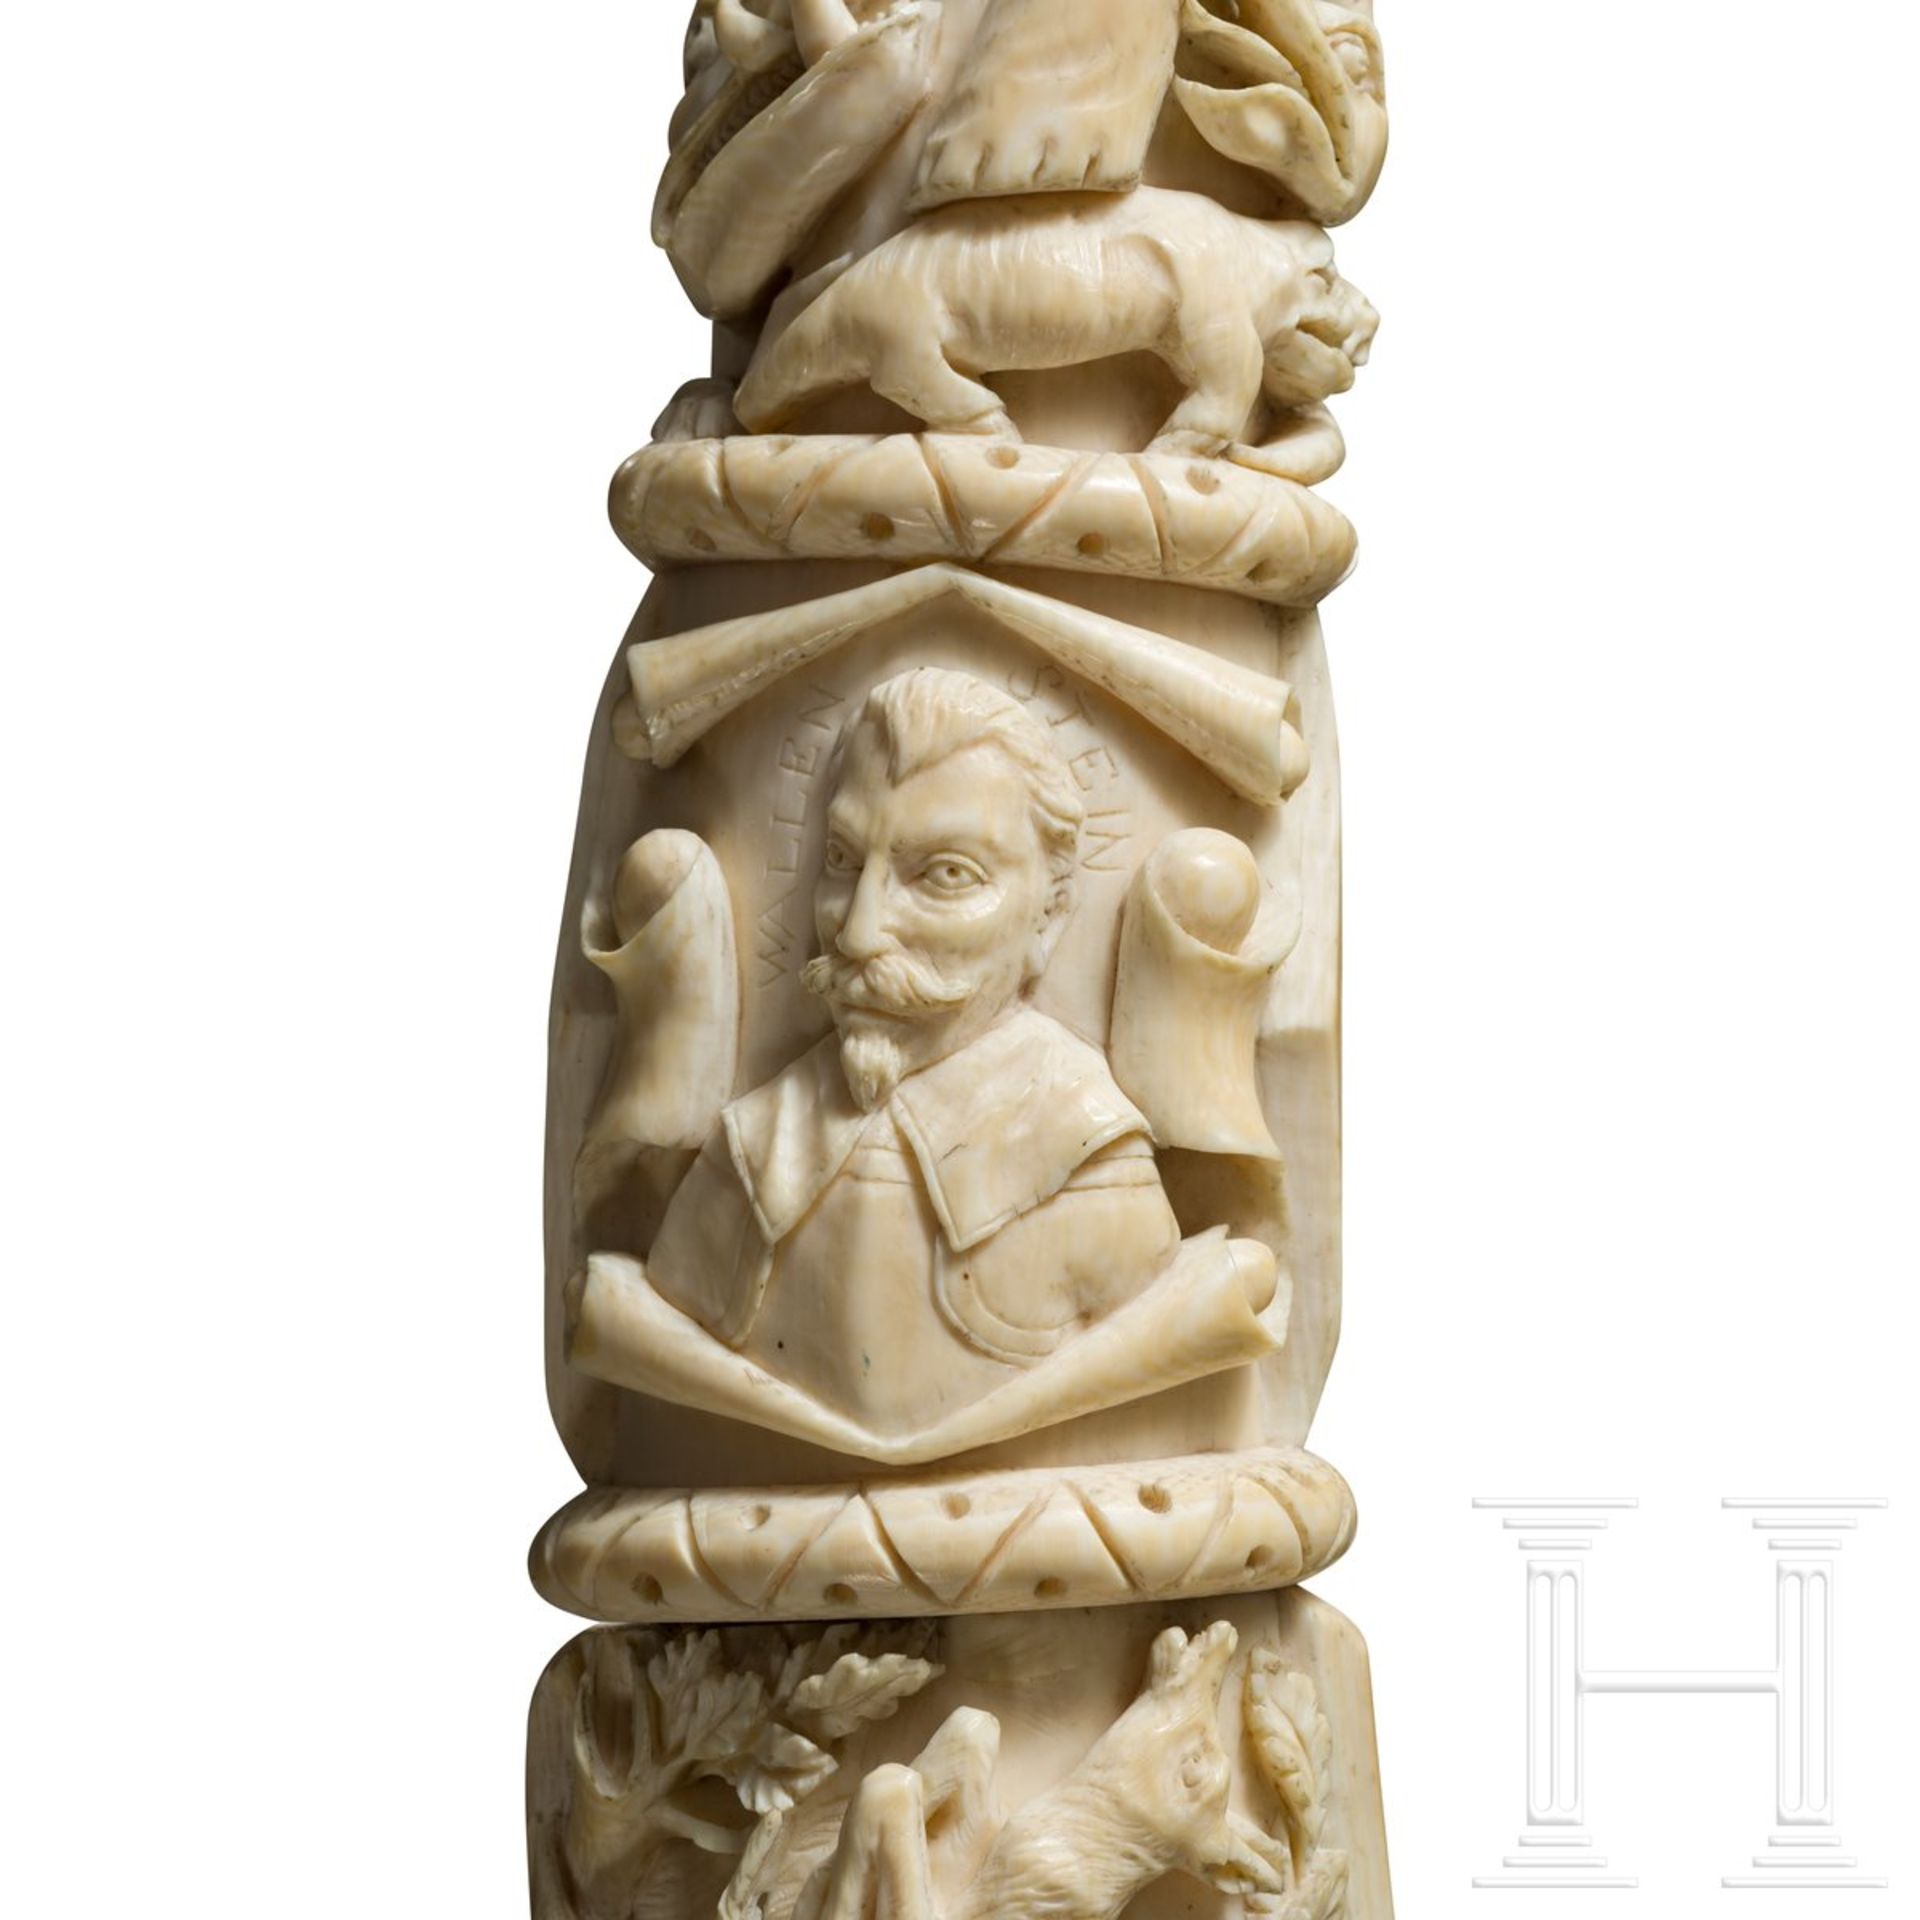 Plastisch beschnitzter Olifant, deutsch, 19. Jhdt.Dreiteilig aus einem mächtigen Elfenbeinzahn, - Bild 3 aus 6